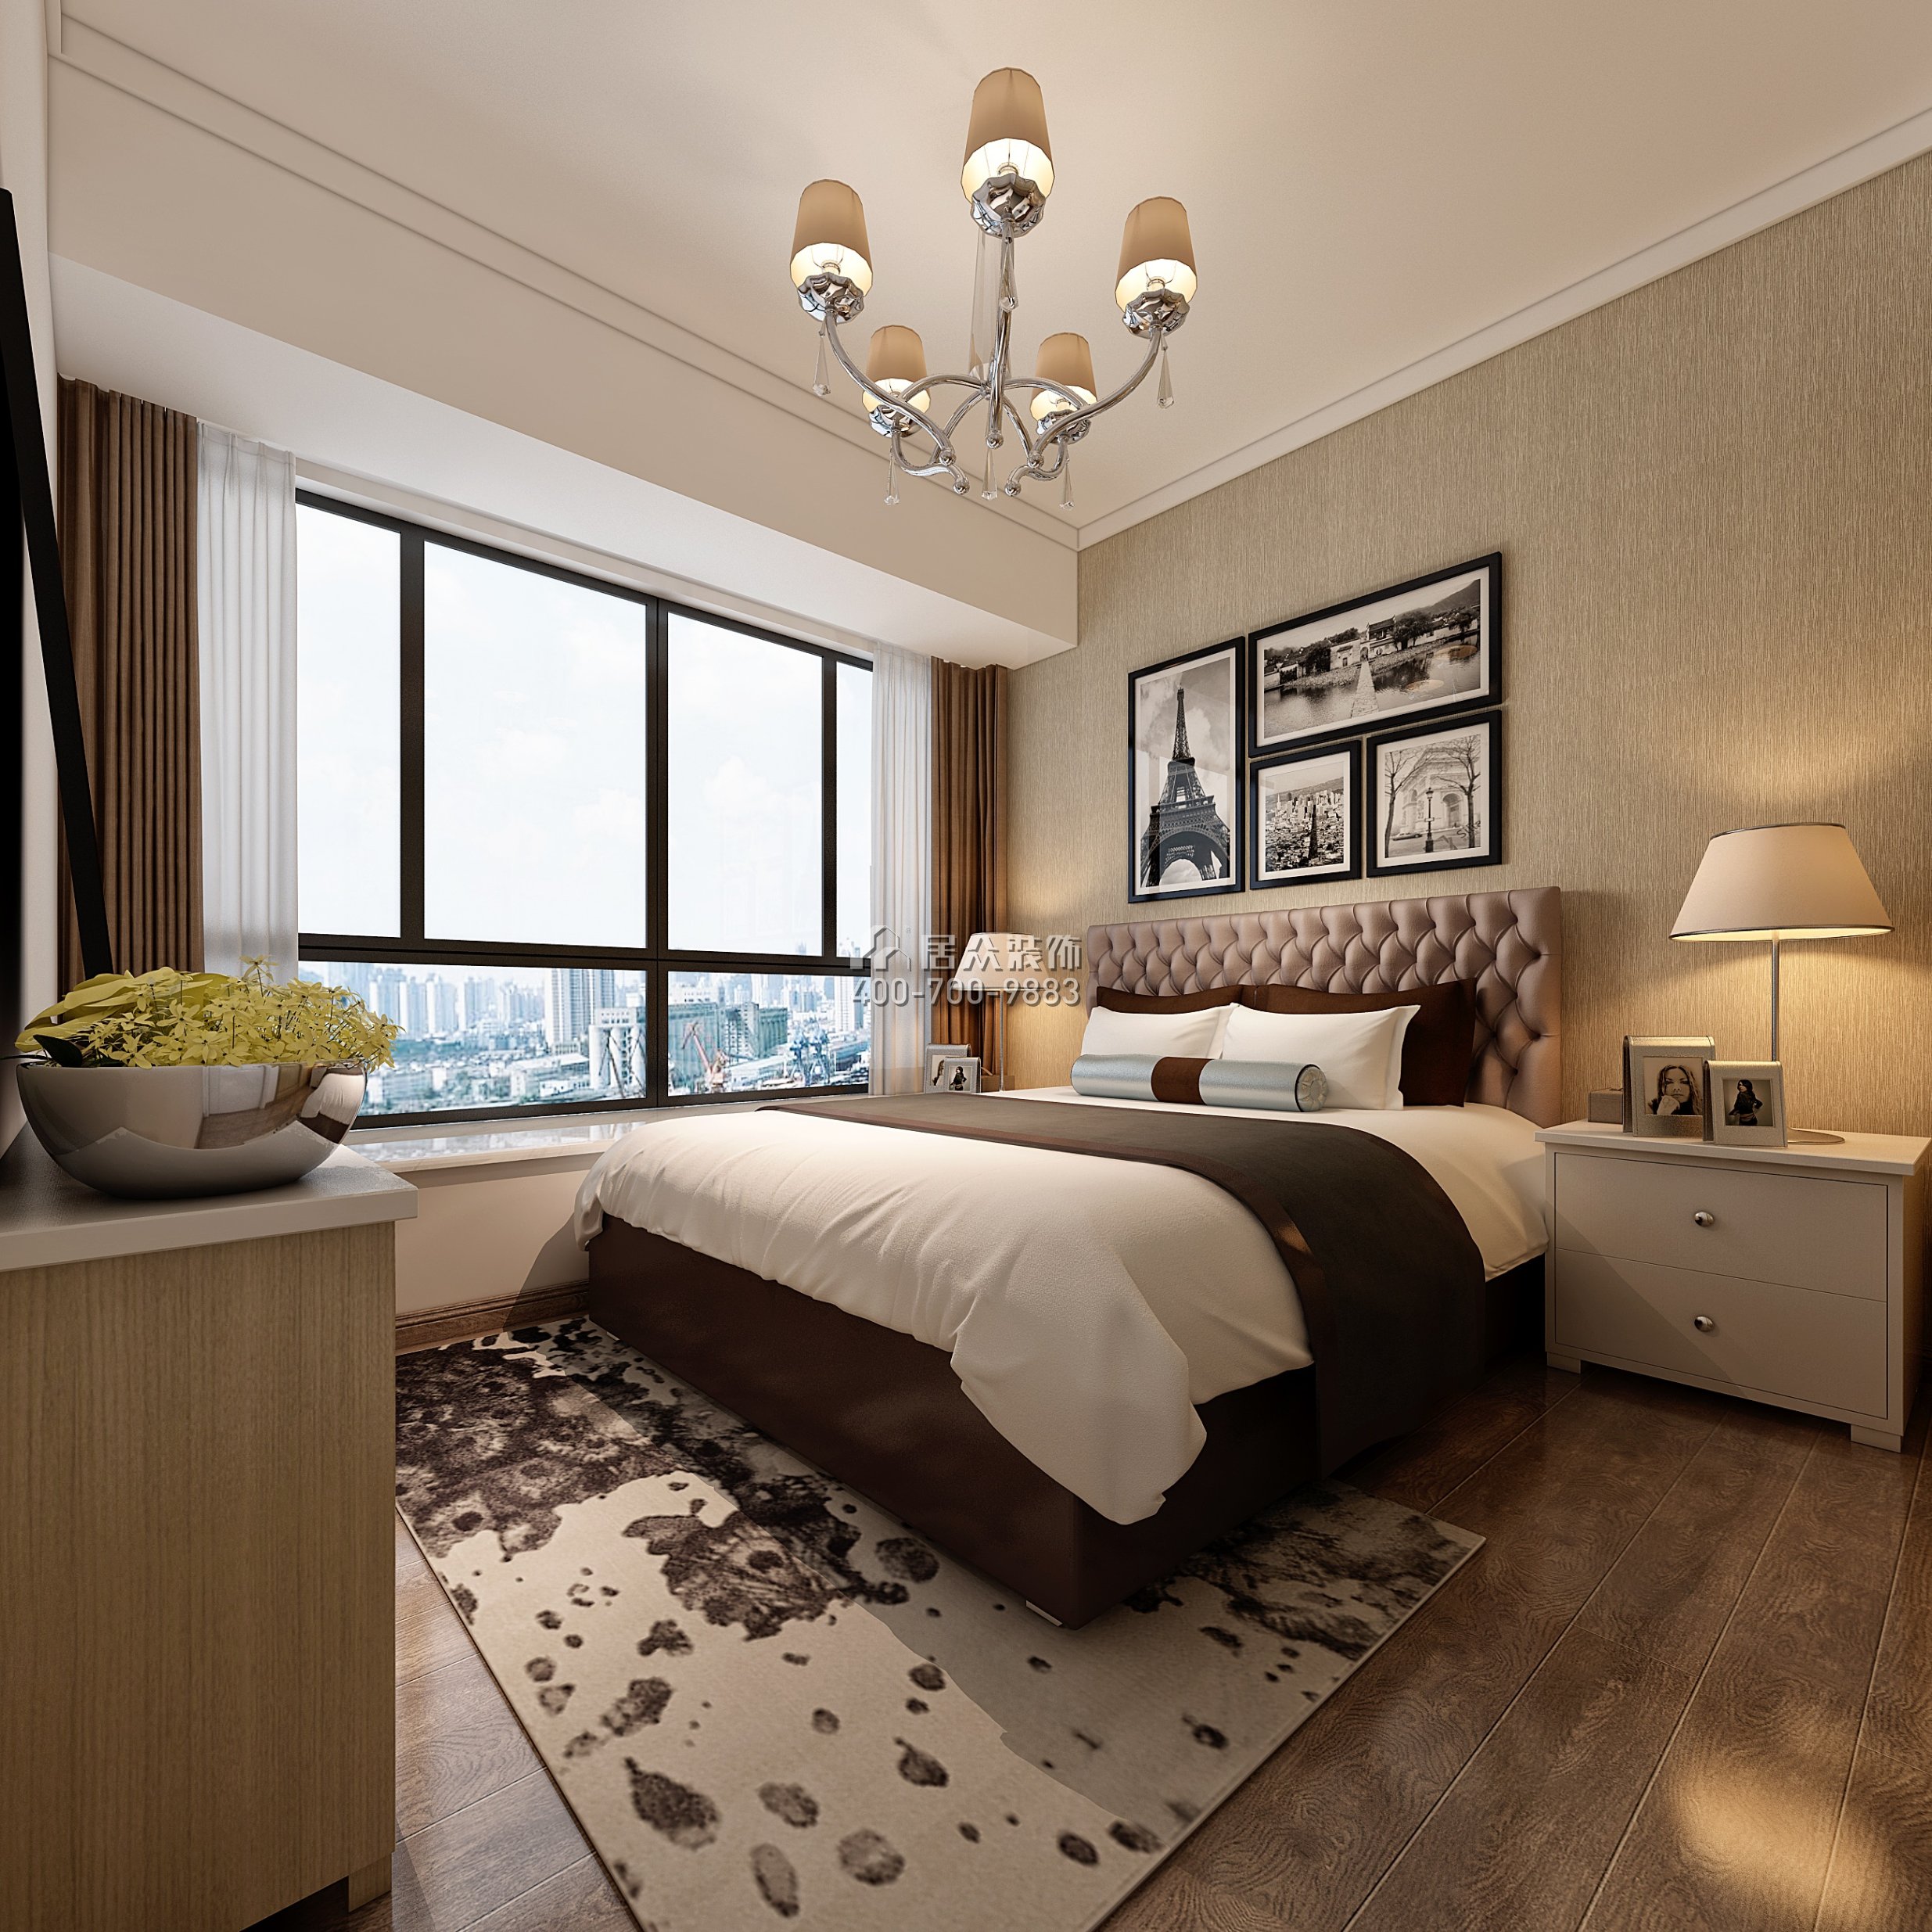 佳兆业广场80平方米现代简约风格平层户型卧室装修效果图